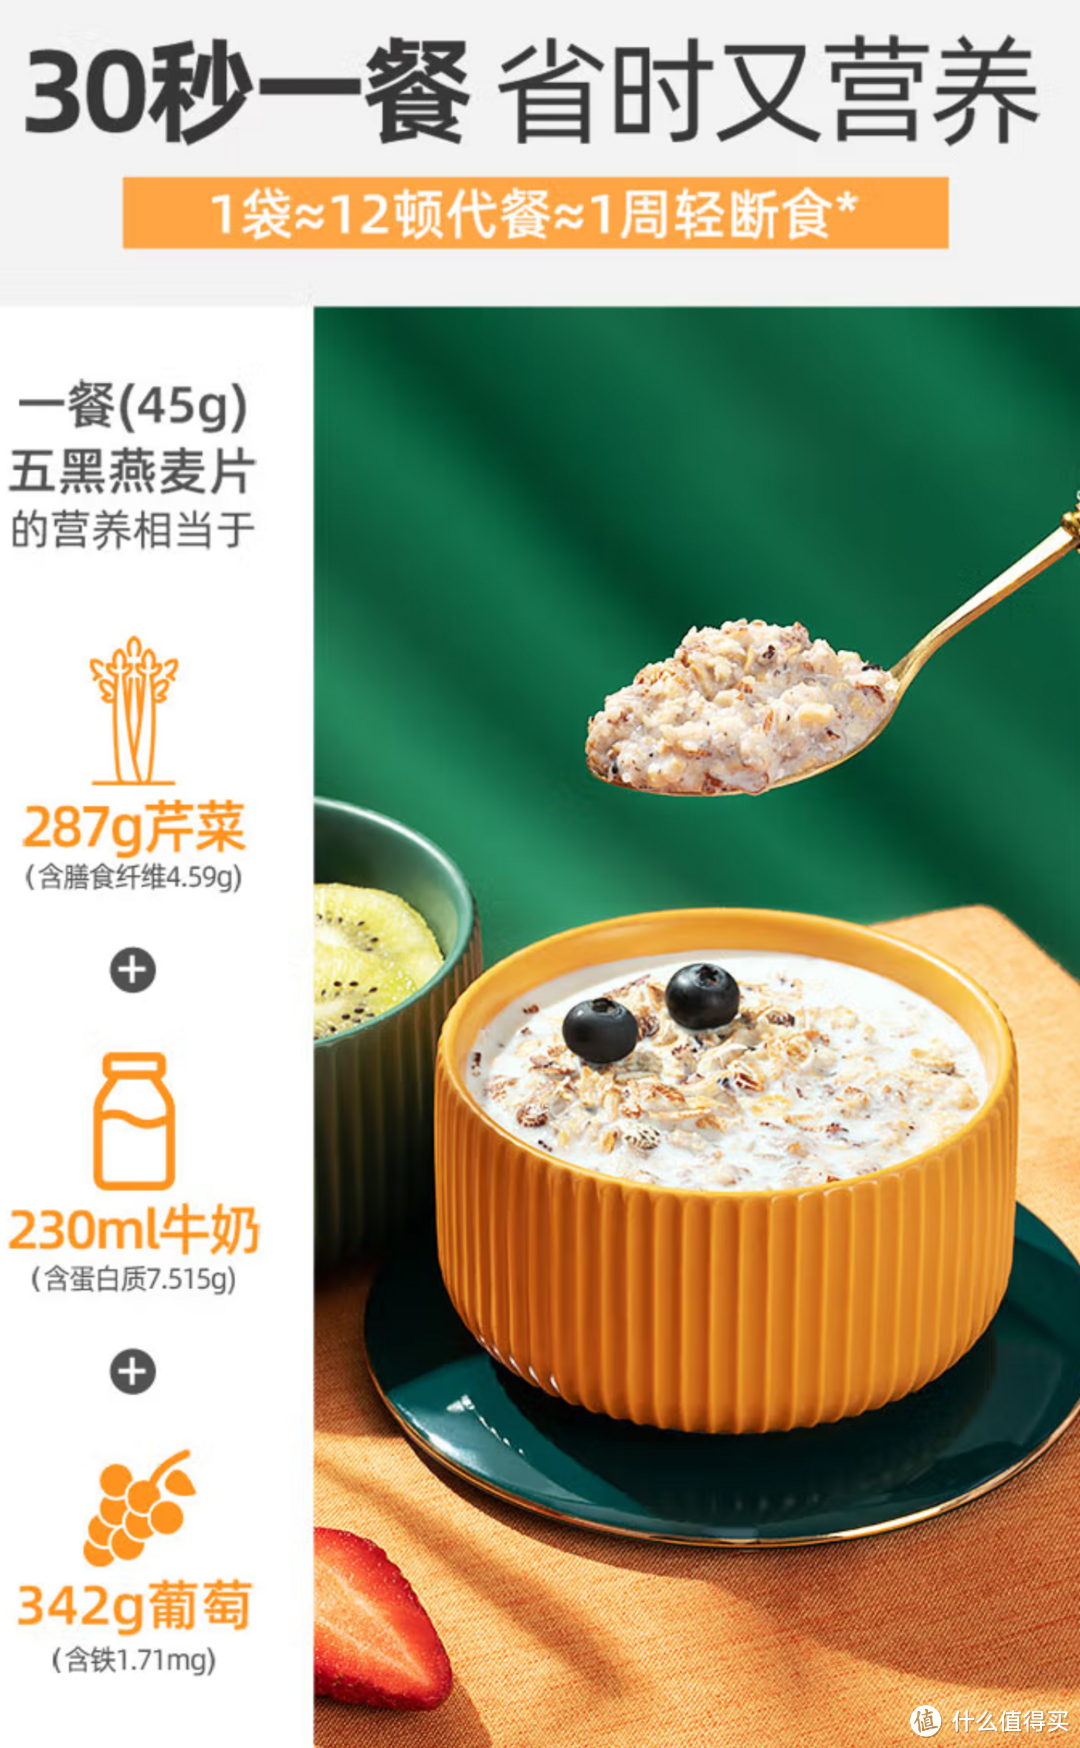 西麦5黑混合谷物燕麦片520g——方便快捷的营养早餐选择 